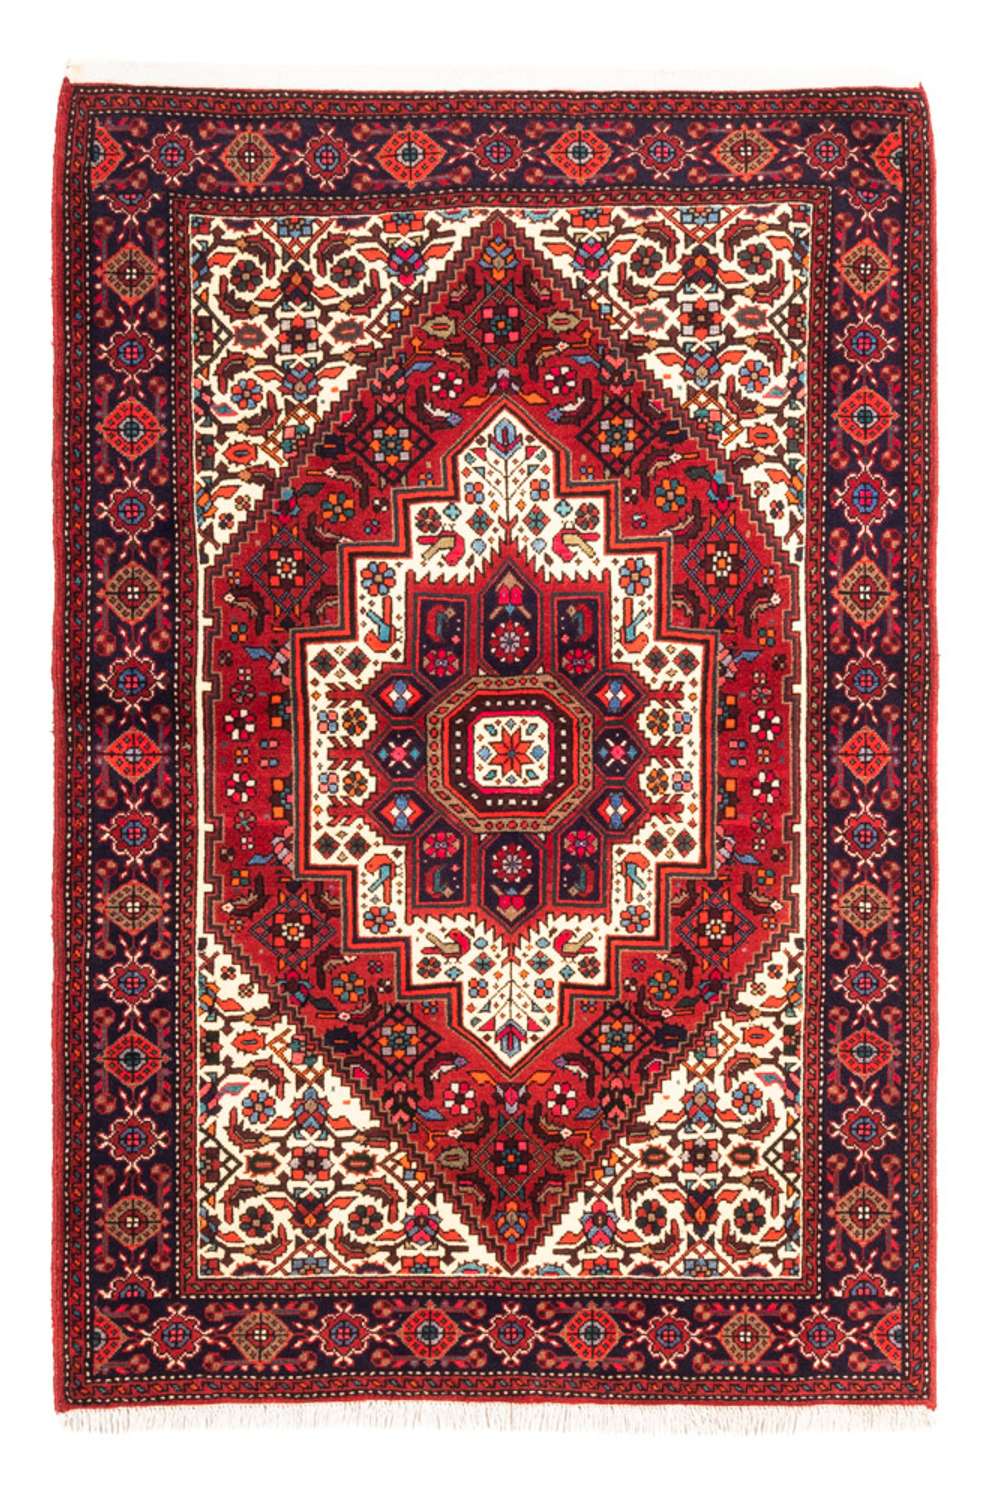 Alfombra persa - Nómada - 148 x 100 cm - rojo